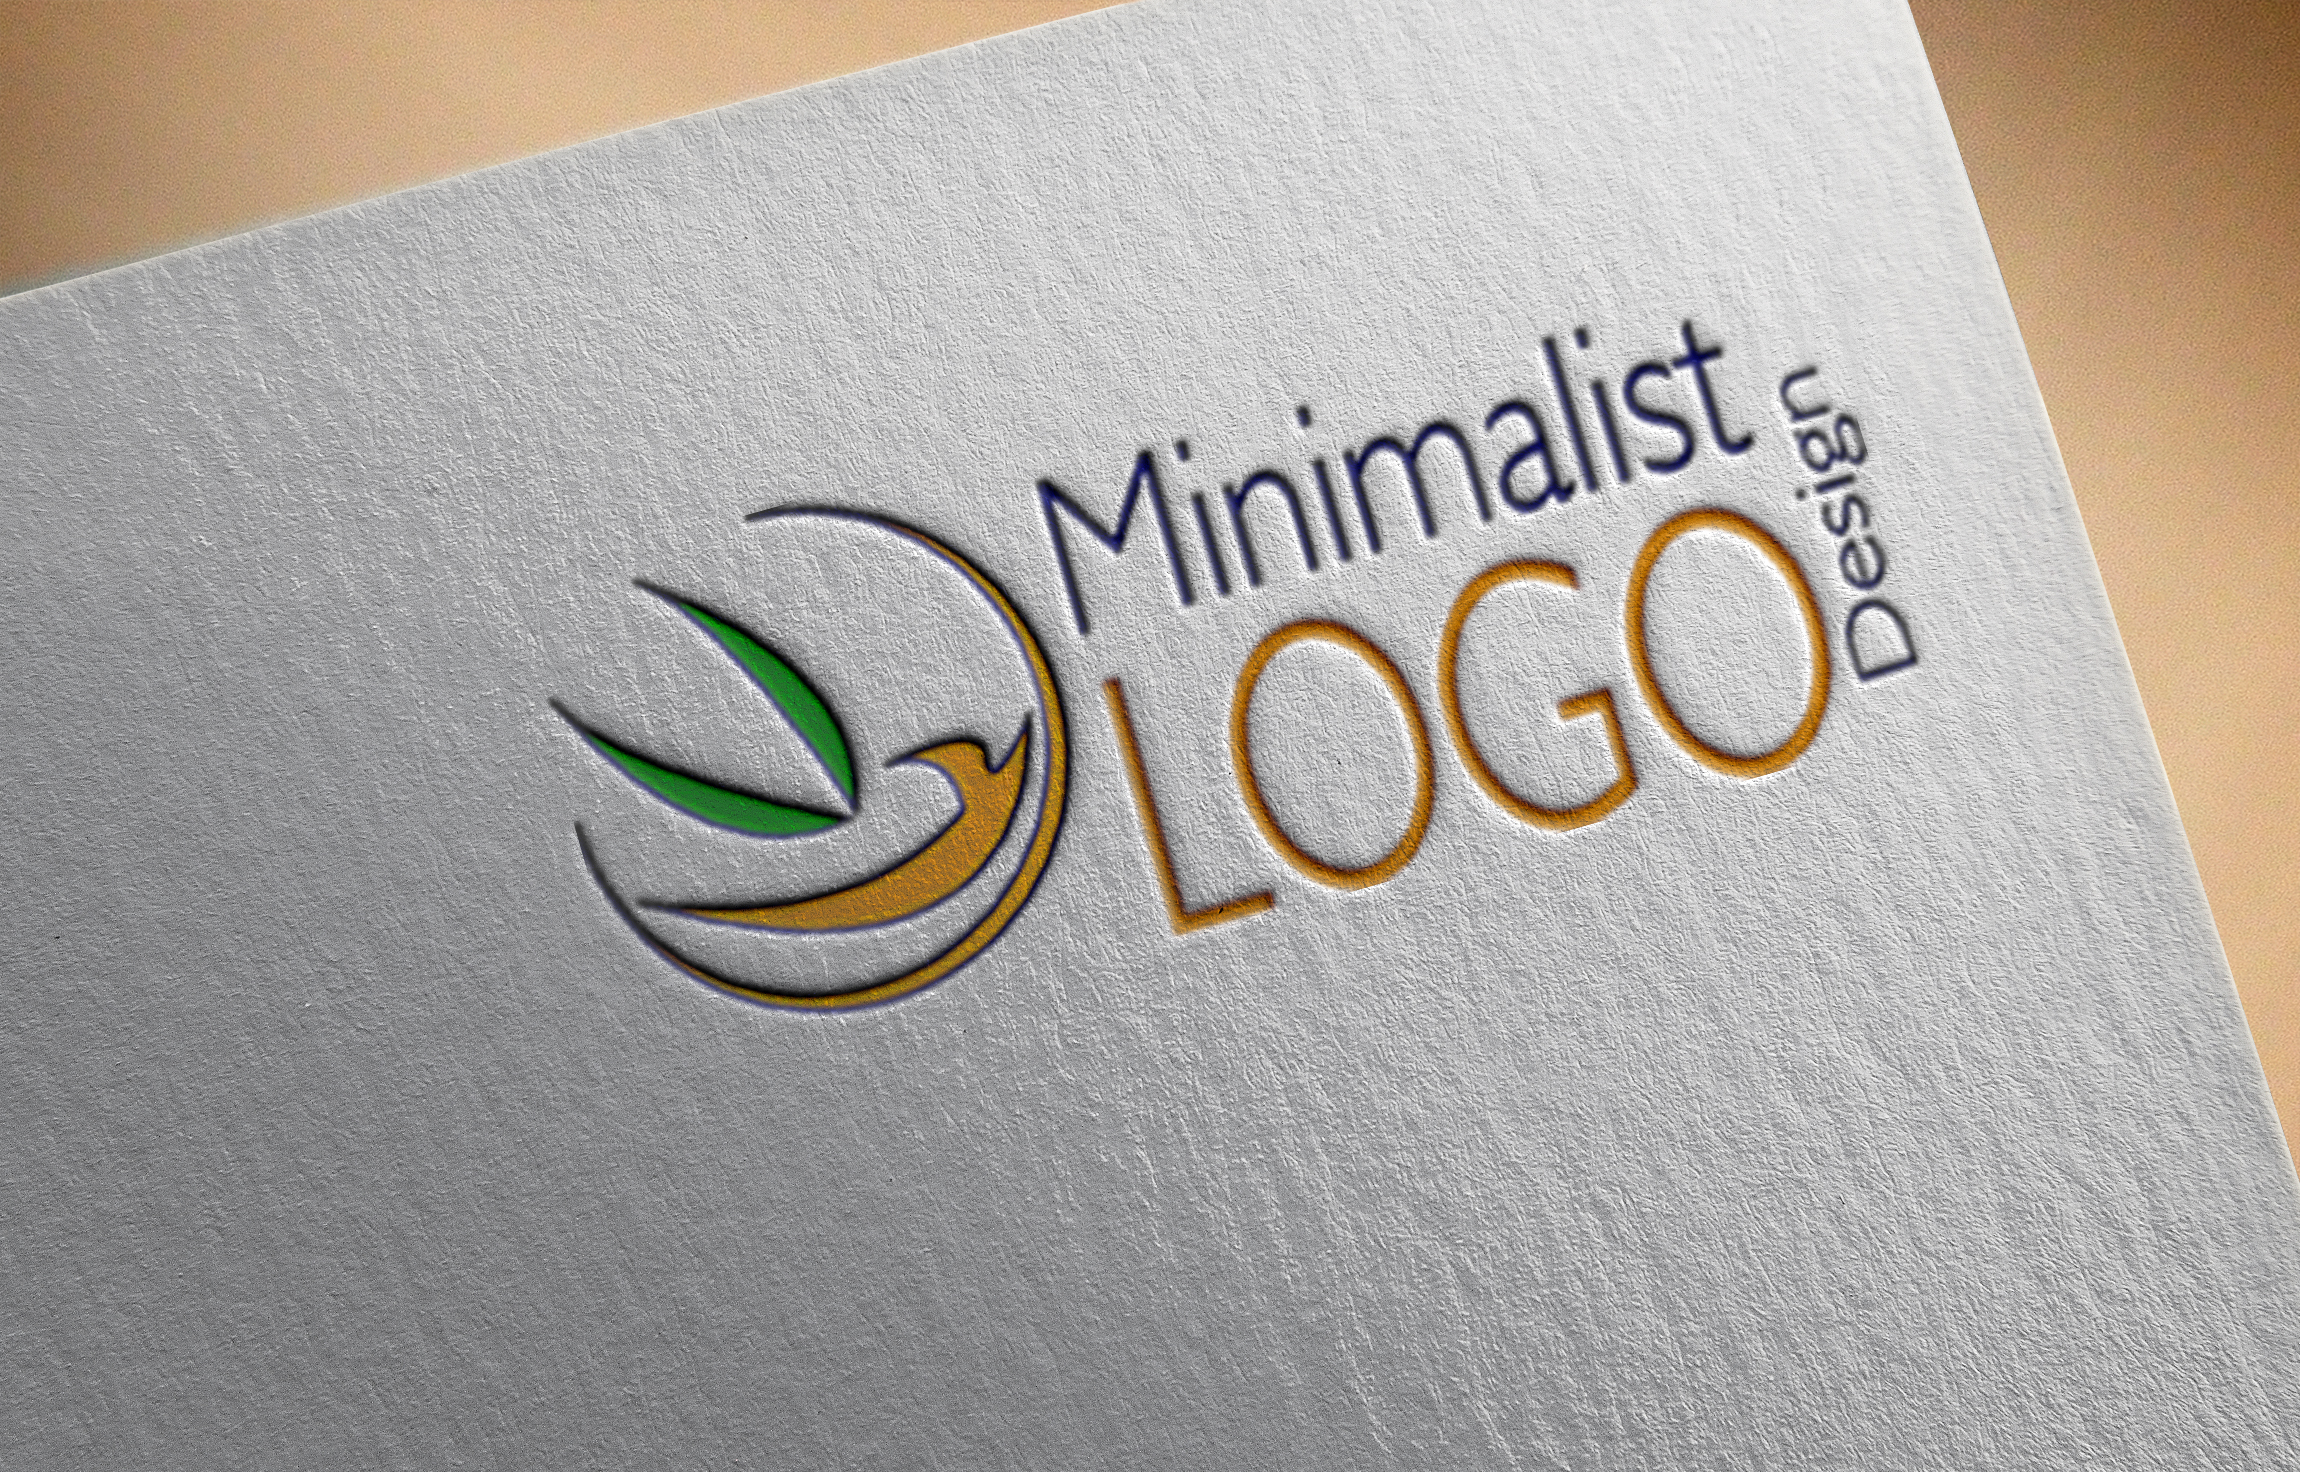 designer logos